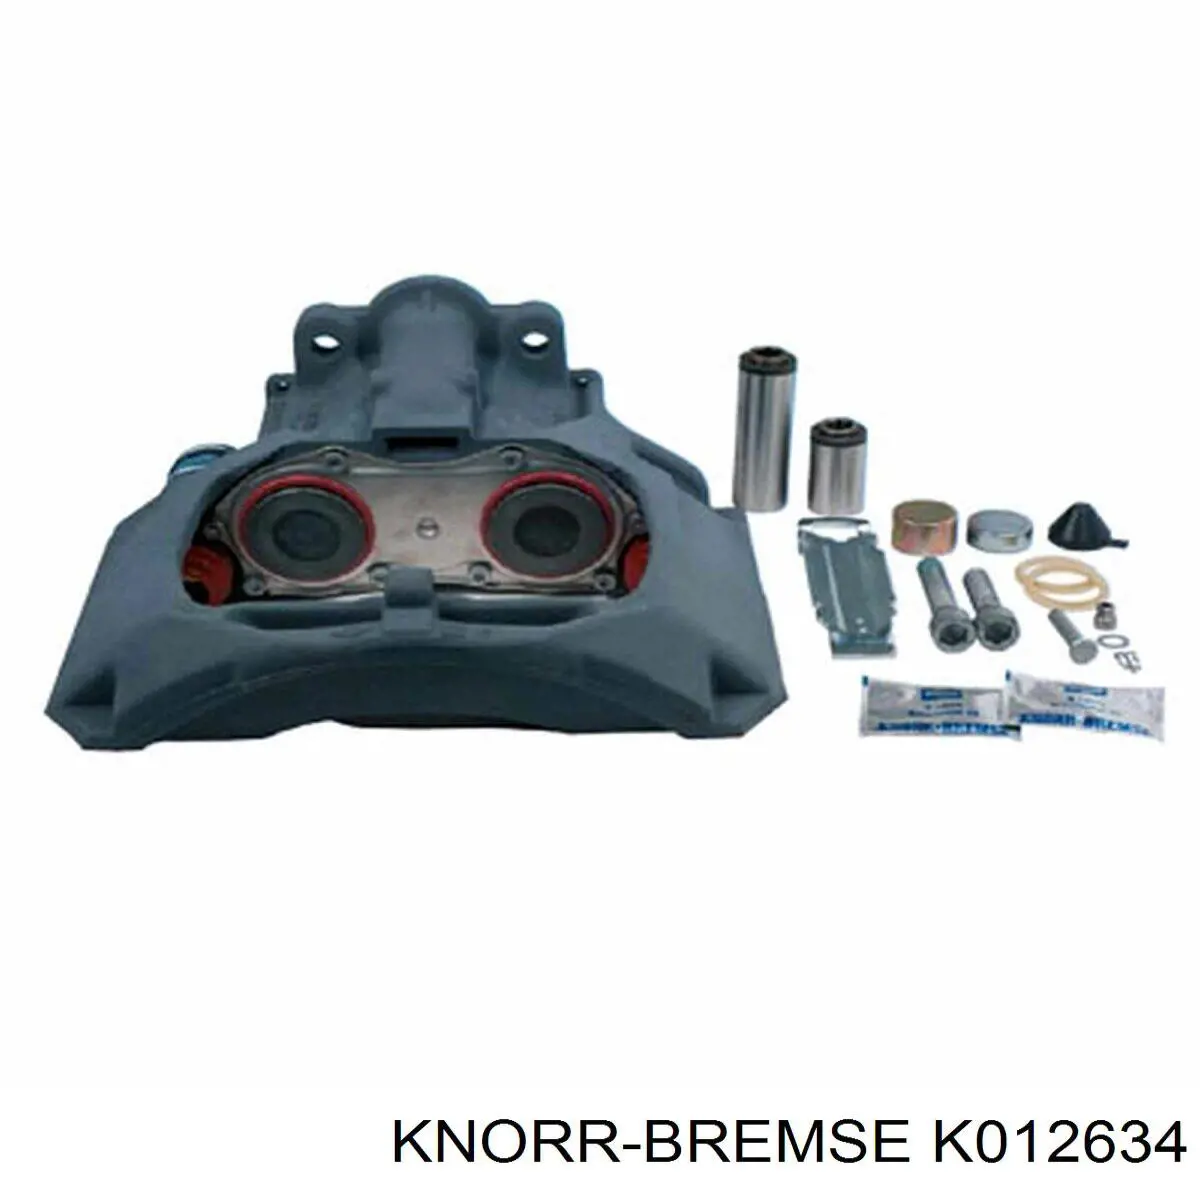 K013874 Knorr-bremse суппорт тормозной задний правый